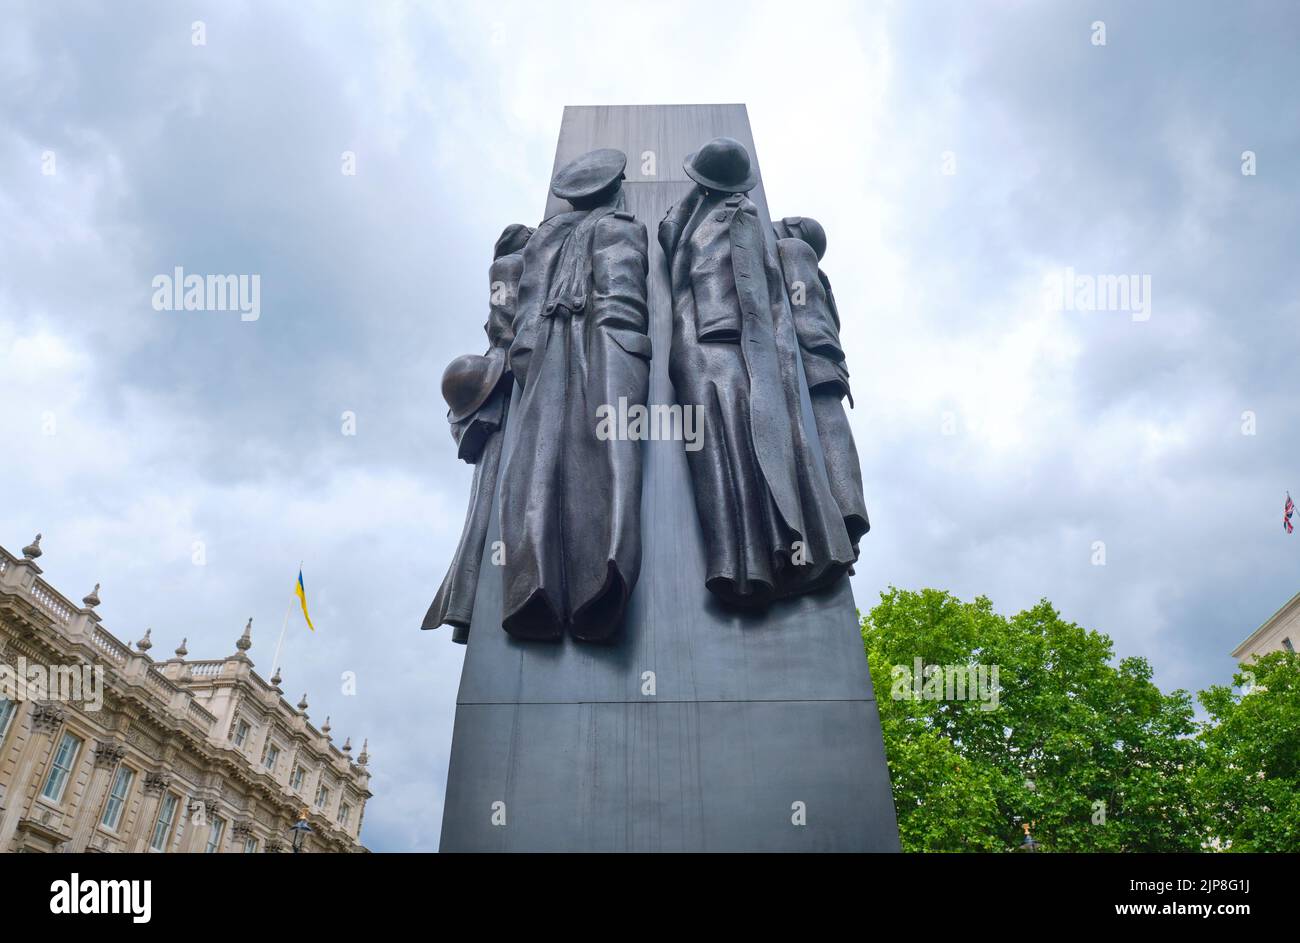 Un mémorial de bronze, hommage aux femmes de la Seconde Guerre mondiale Le long de Whitehall Road à Londres, Angleterre, Royaume-Uni. Banque D'Images